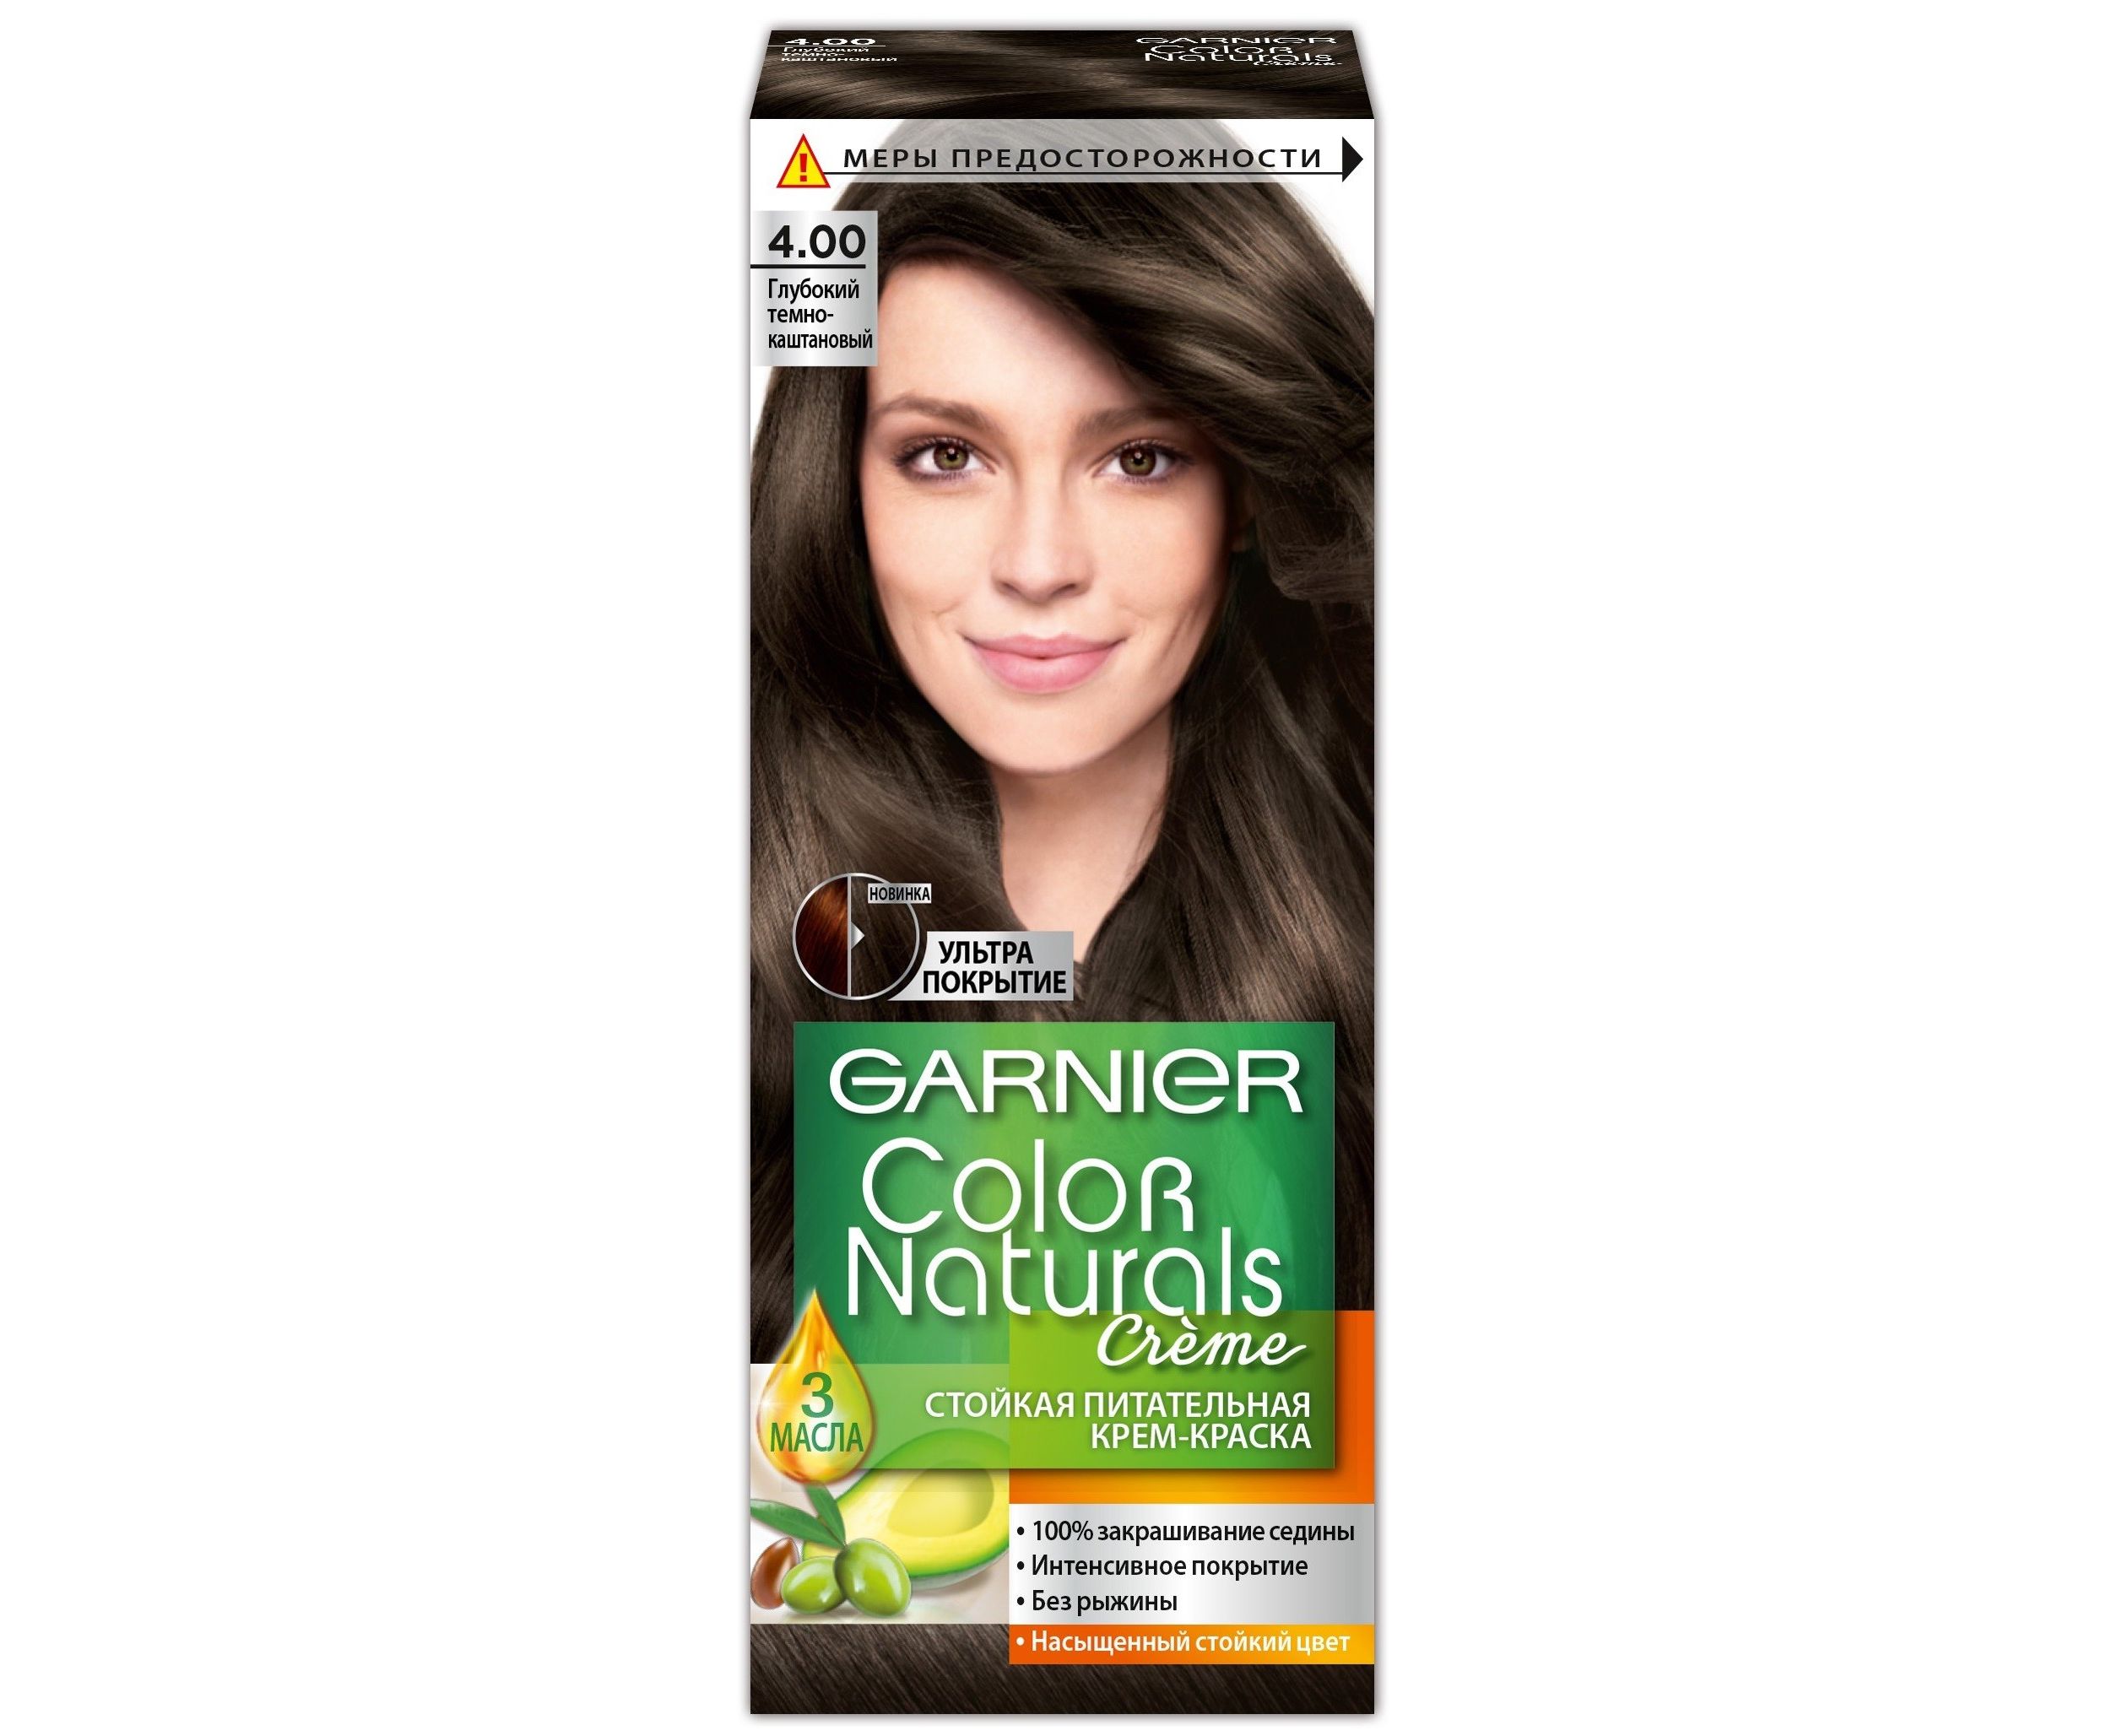 Крем-краска для волос Garnier Color Naturals, 4.0 глубокий темно-каштановый, 110 мл